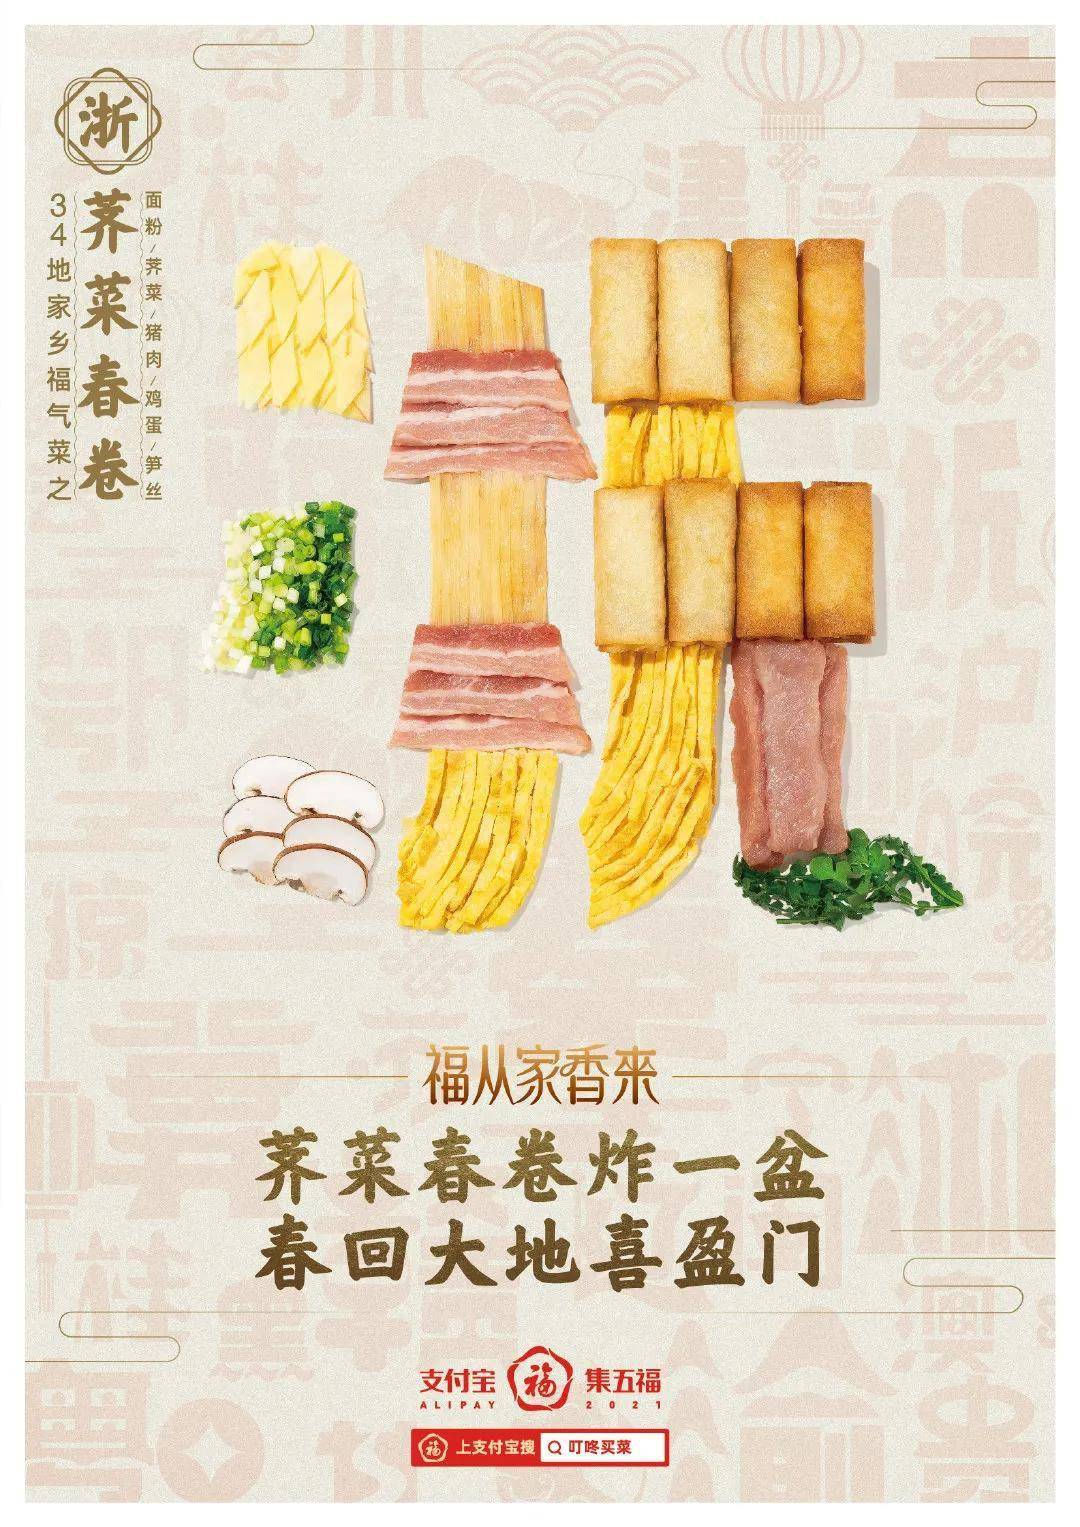 海报 支付宝福气菜谱,34个家乡美食海报设计太"香"了